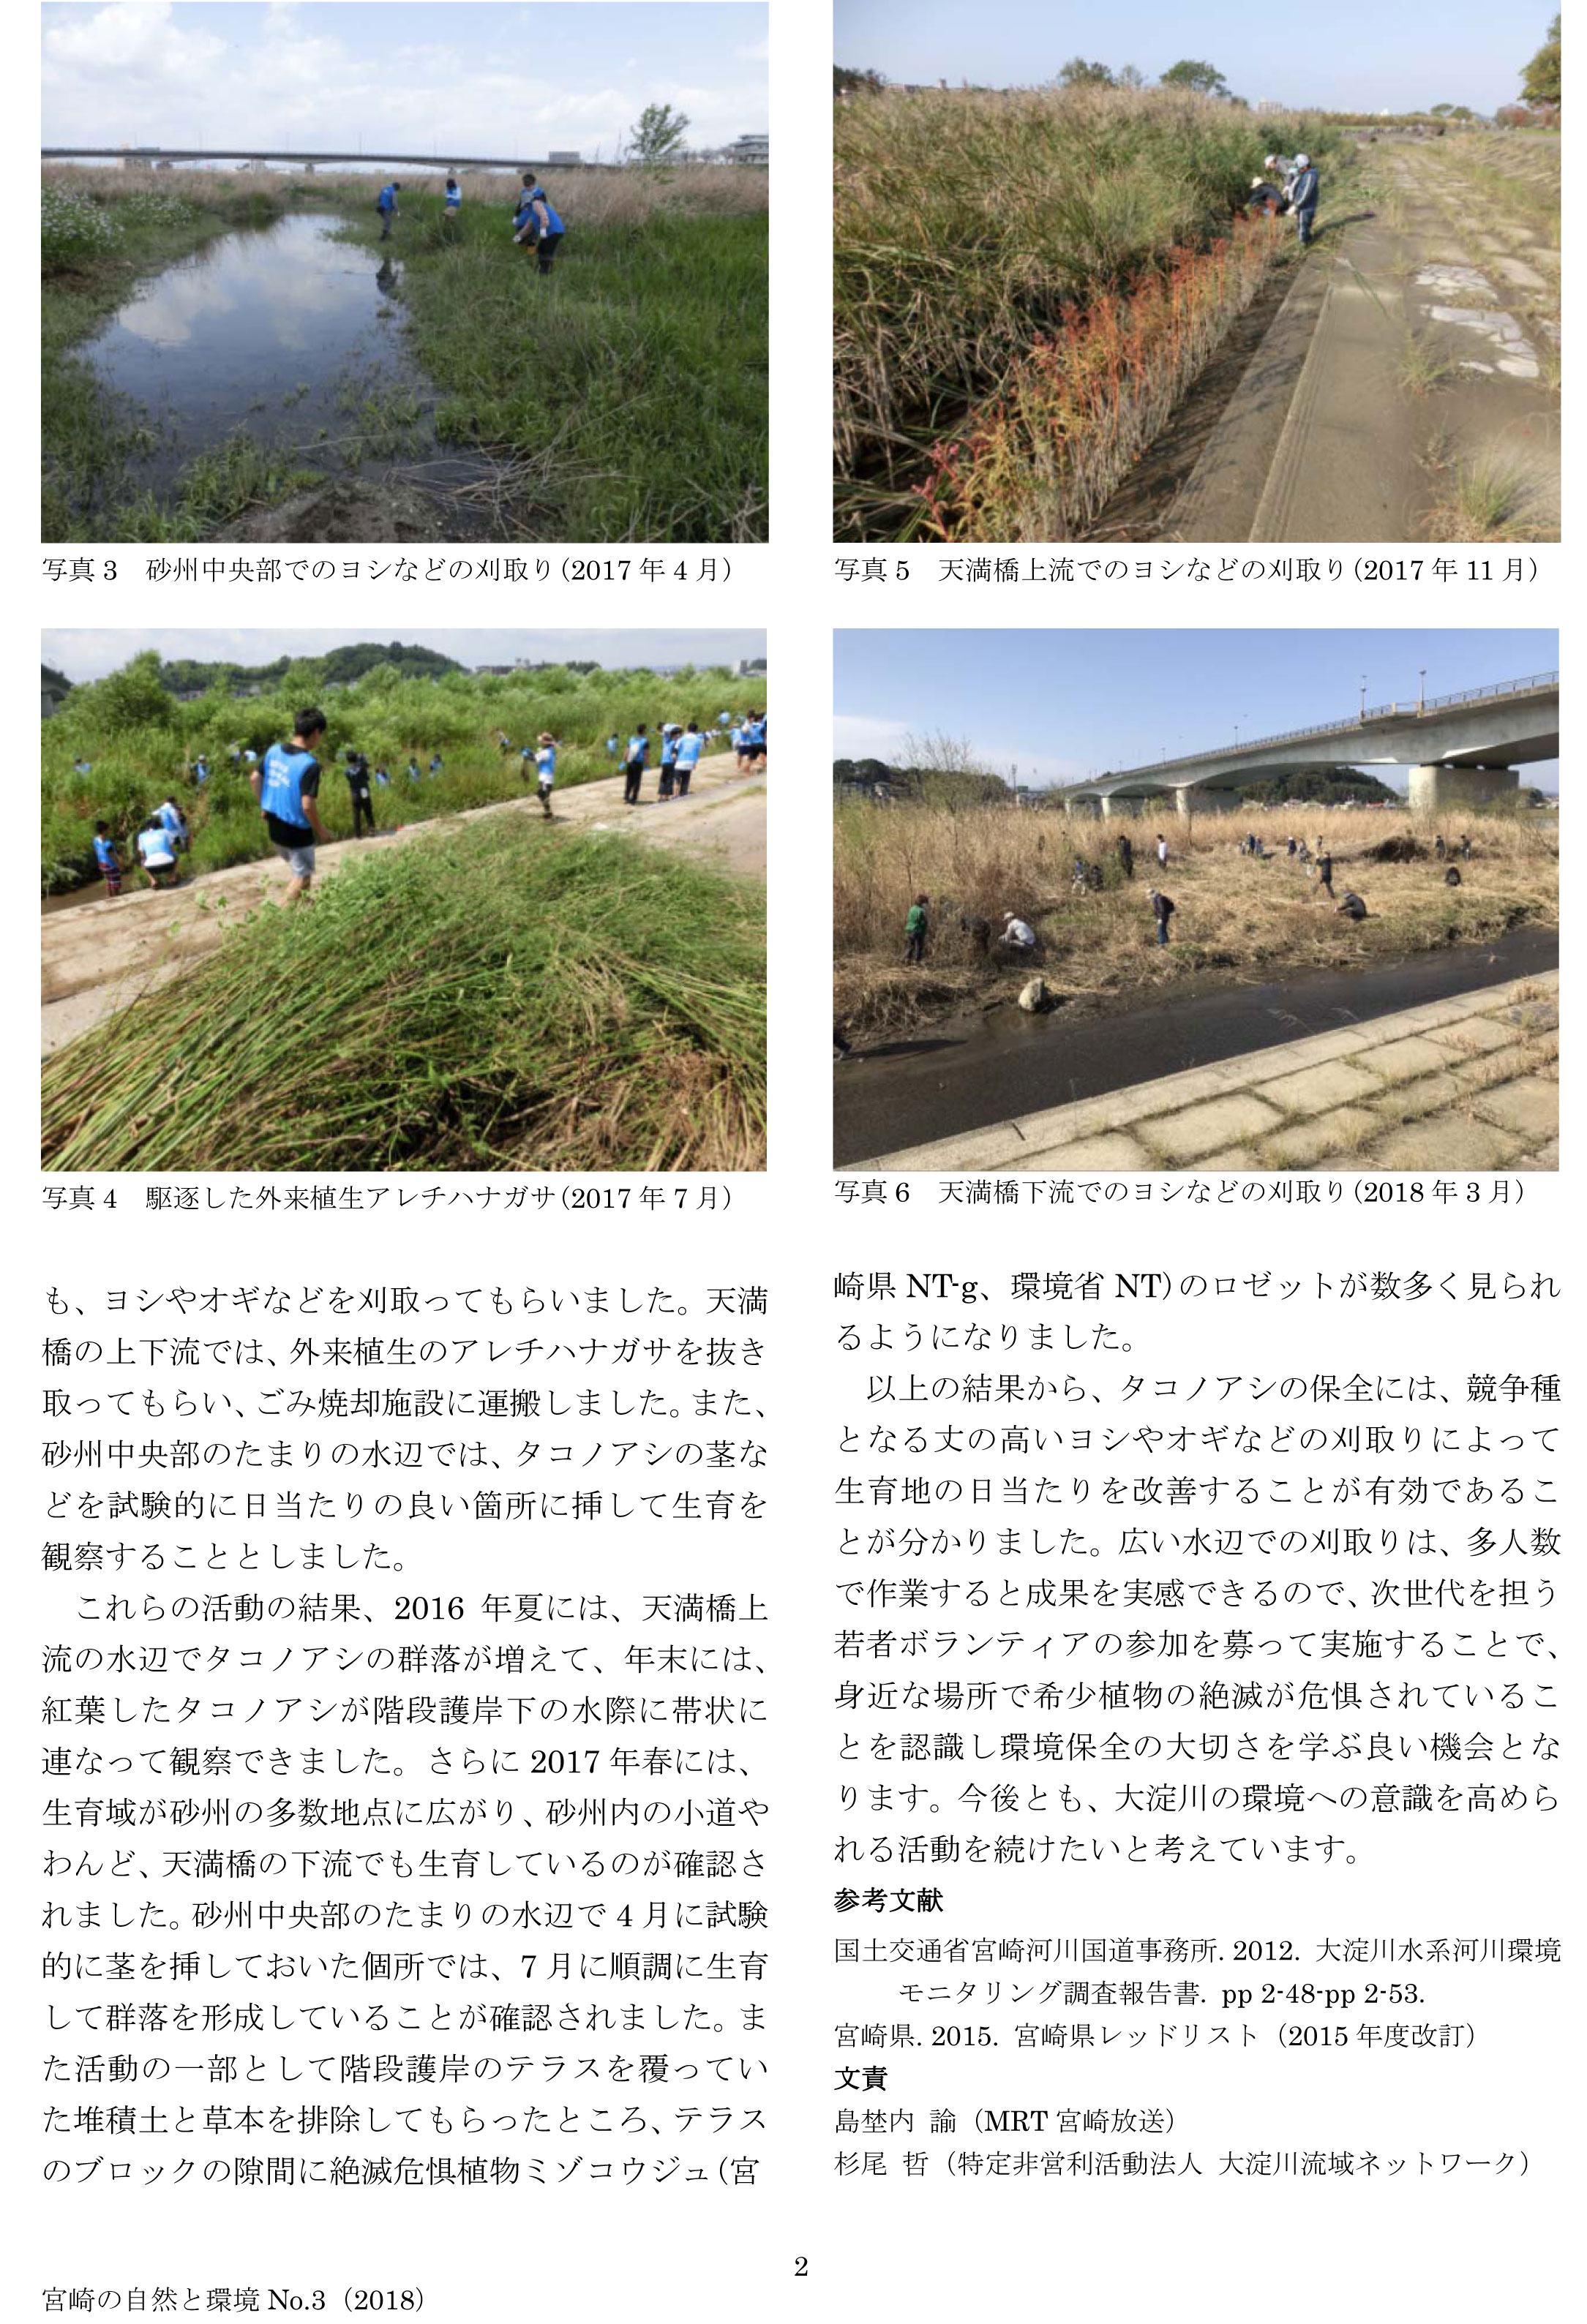 http://oyodo-river.org/images/takonoashi_02.jpg